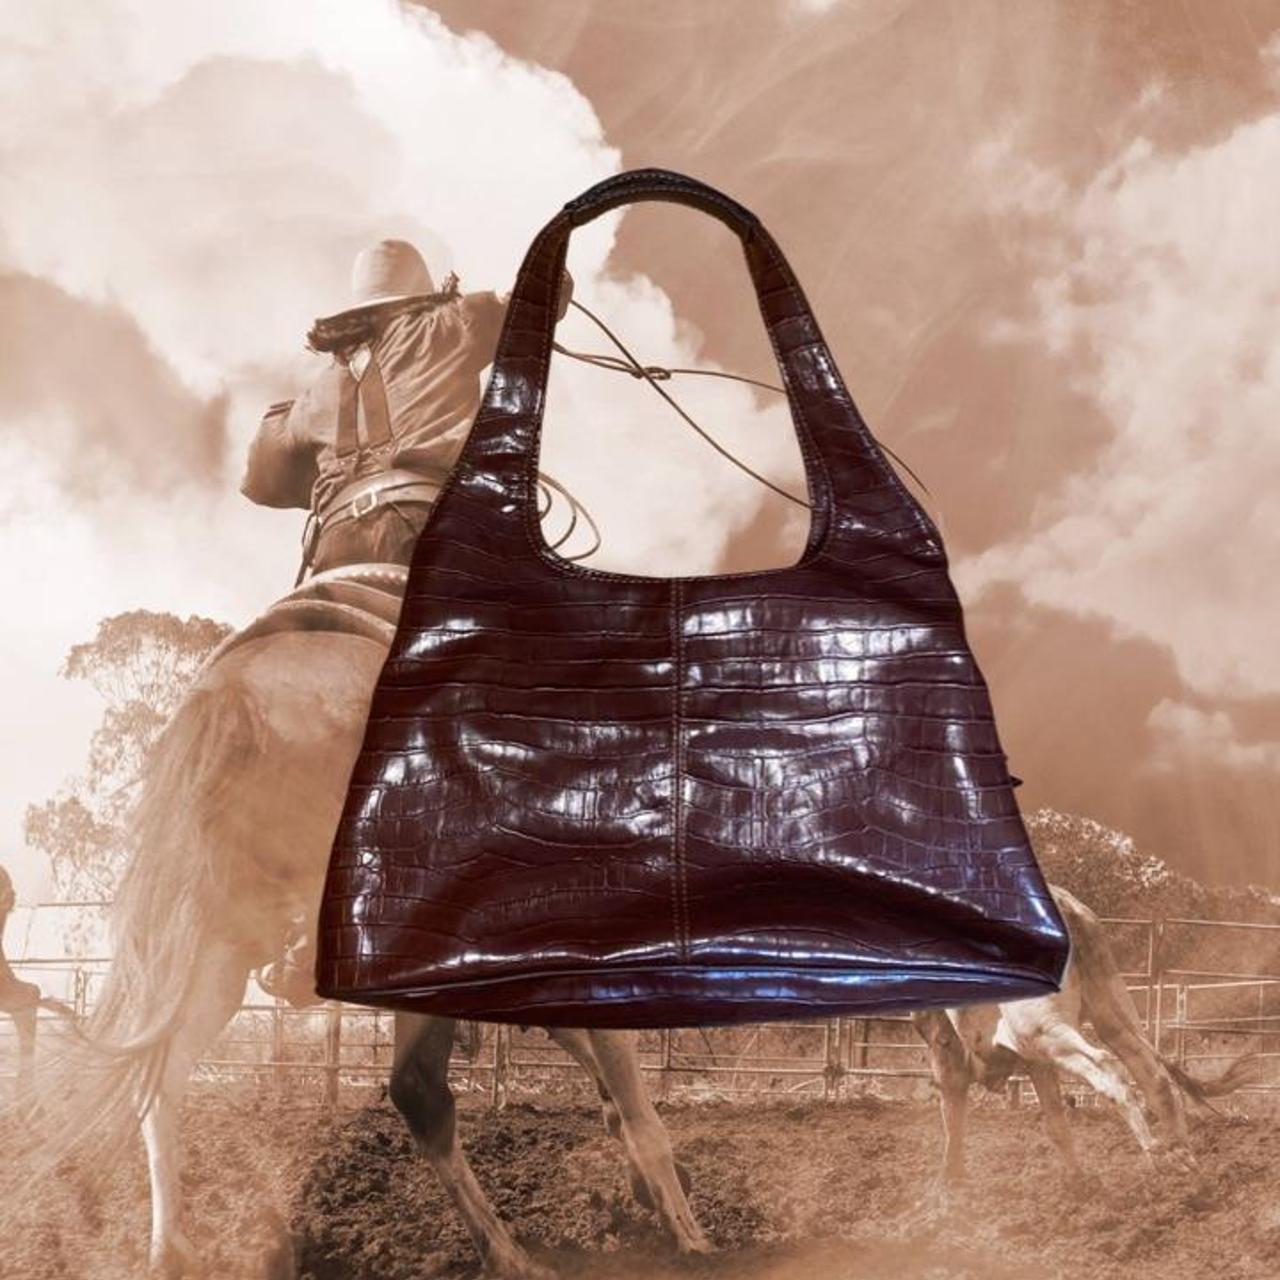 TIFFANY & FRED SHOULDER BAG 💼 The softest baby blue - Depop